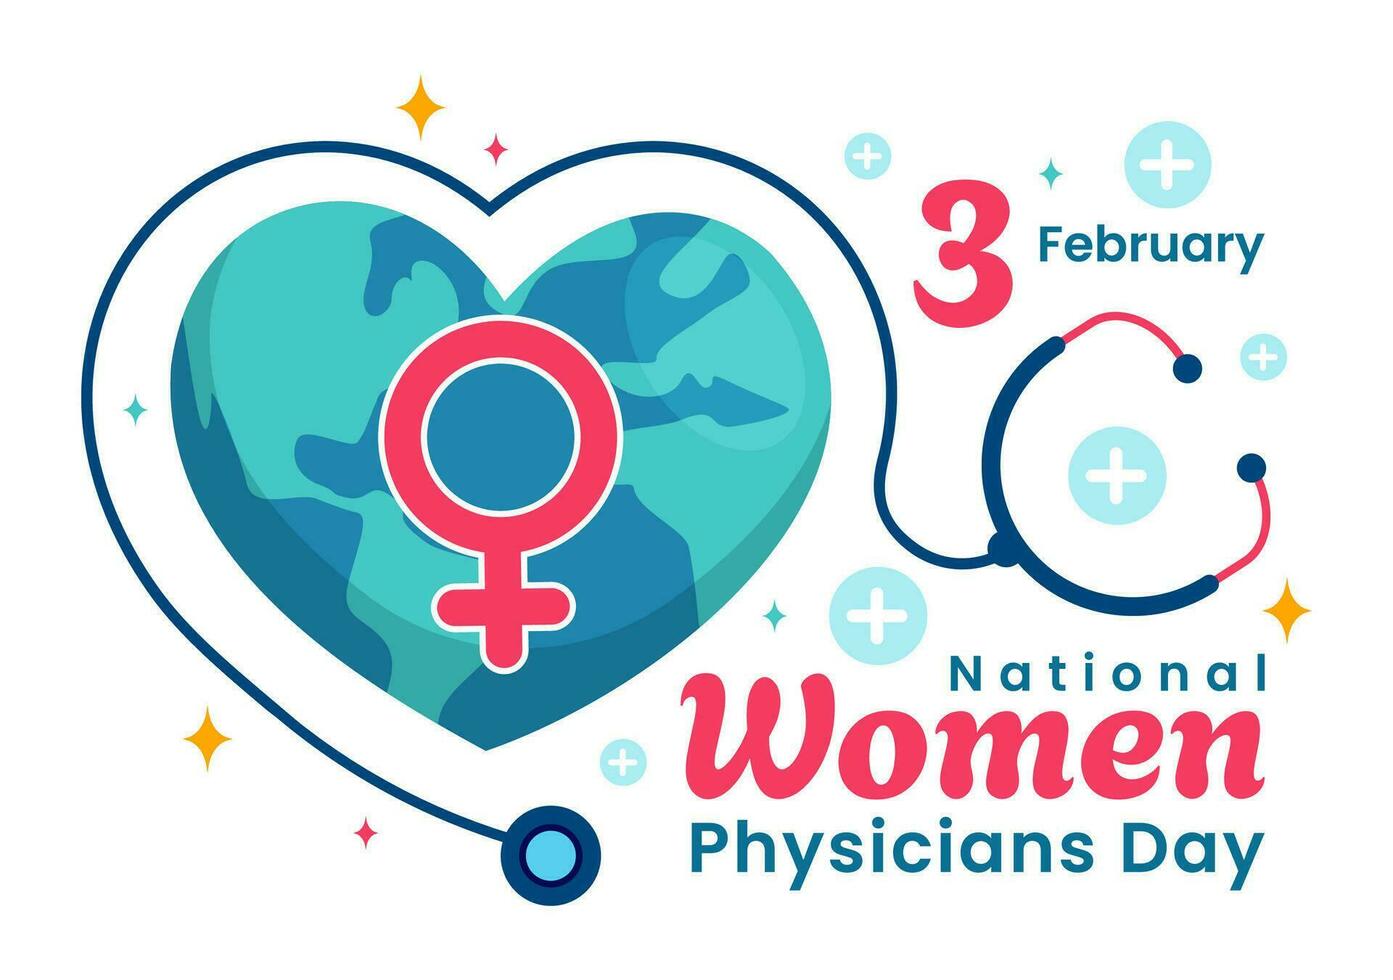 nacional mujer medicos día vector ilustración en febrero 3 a honor hembra doctores a través de el país en plano dibujos animados antecedentes diseño